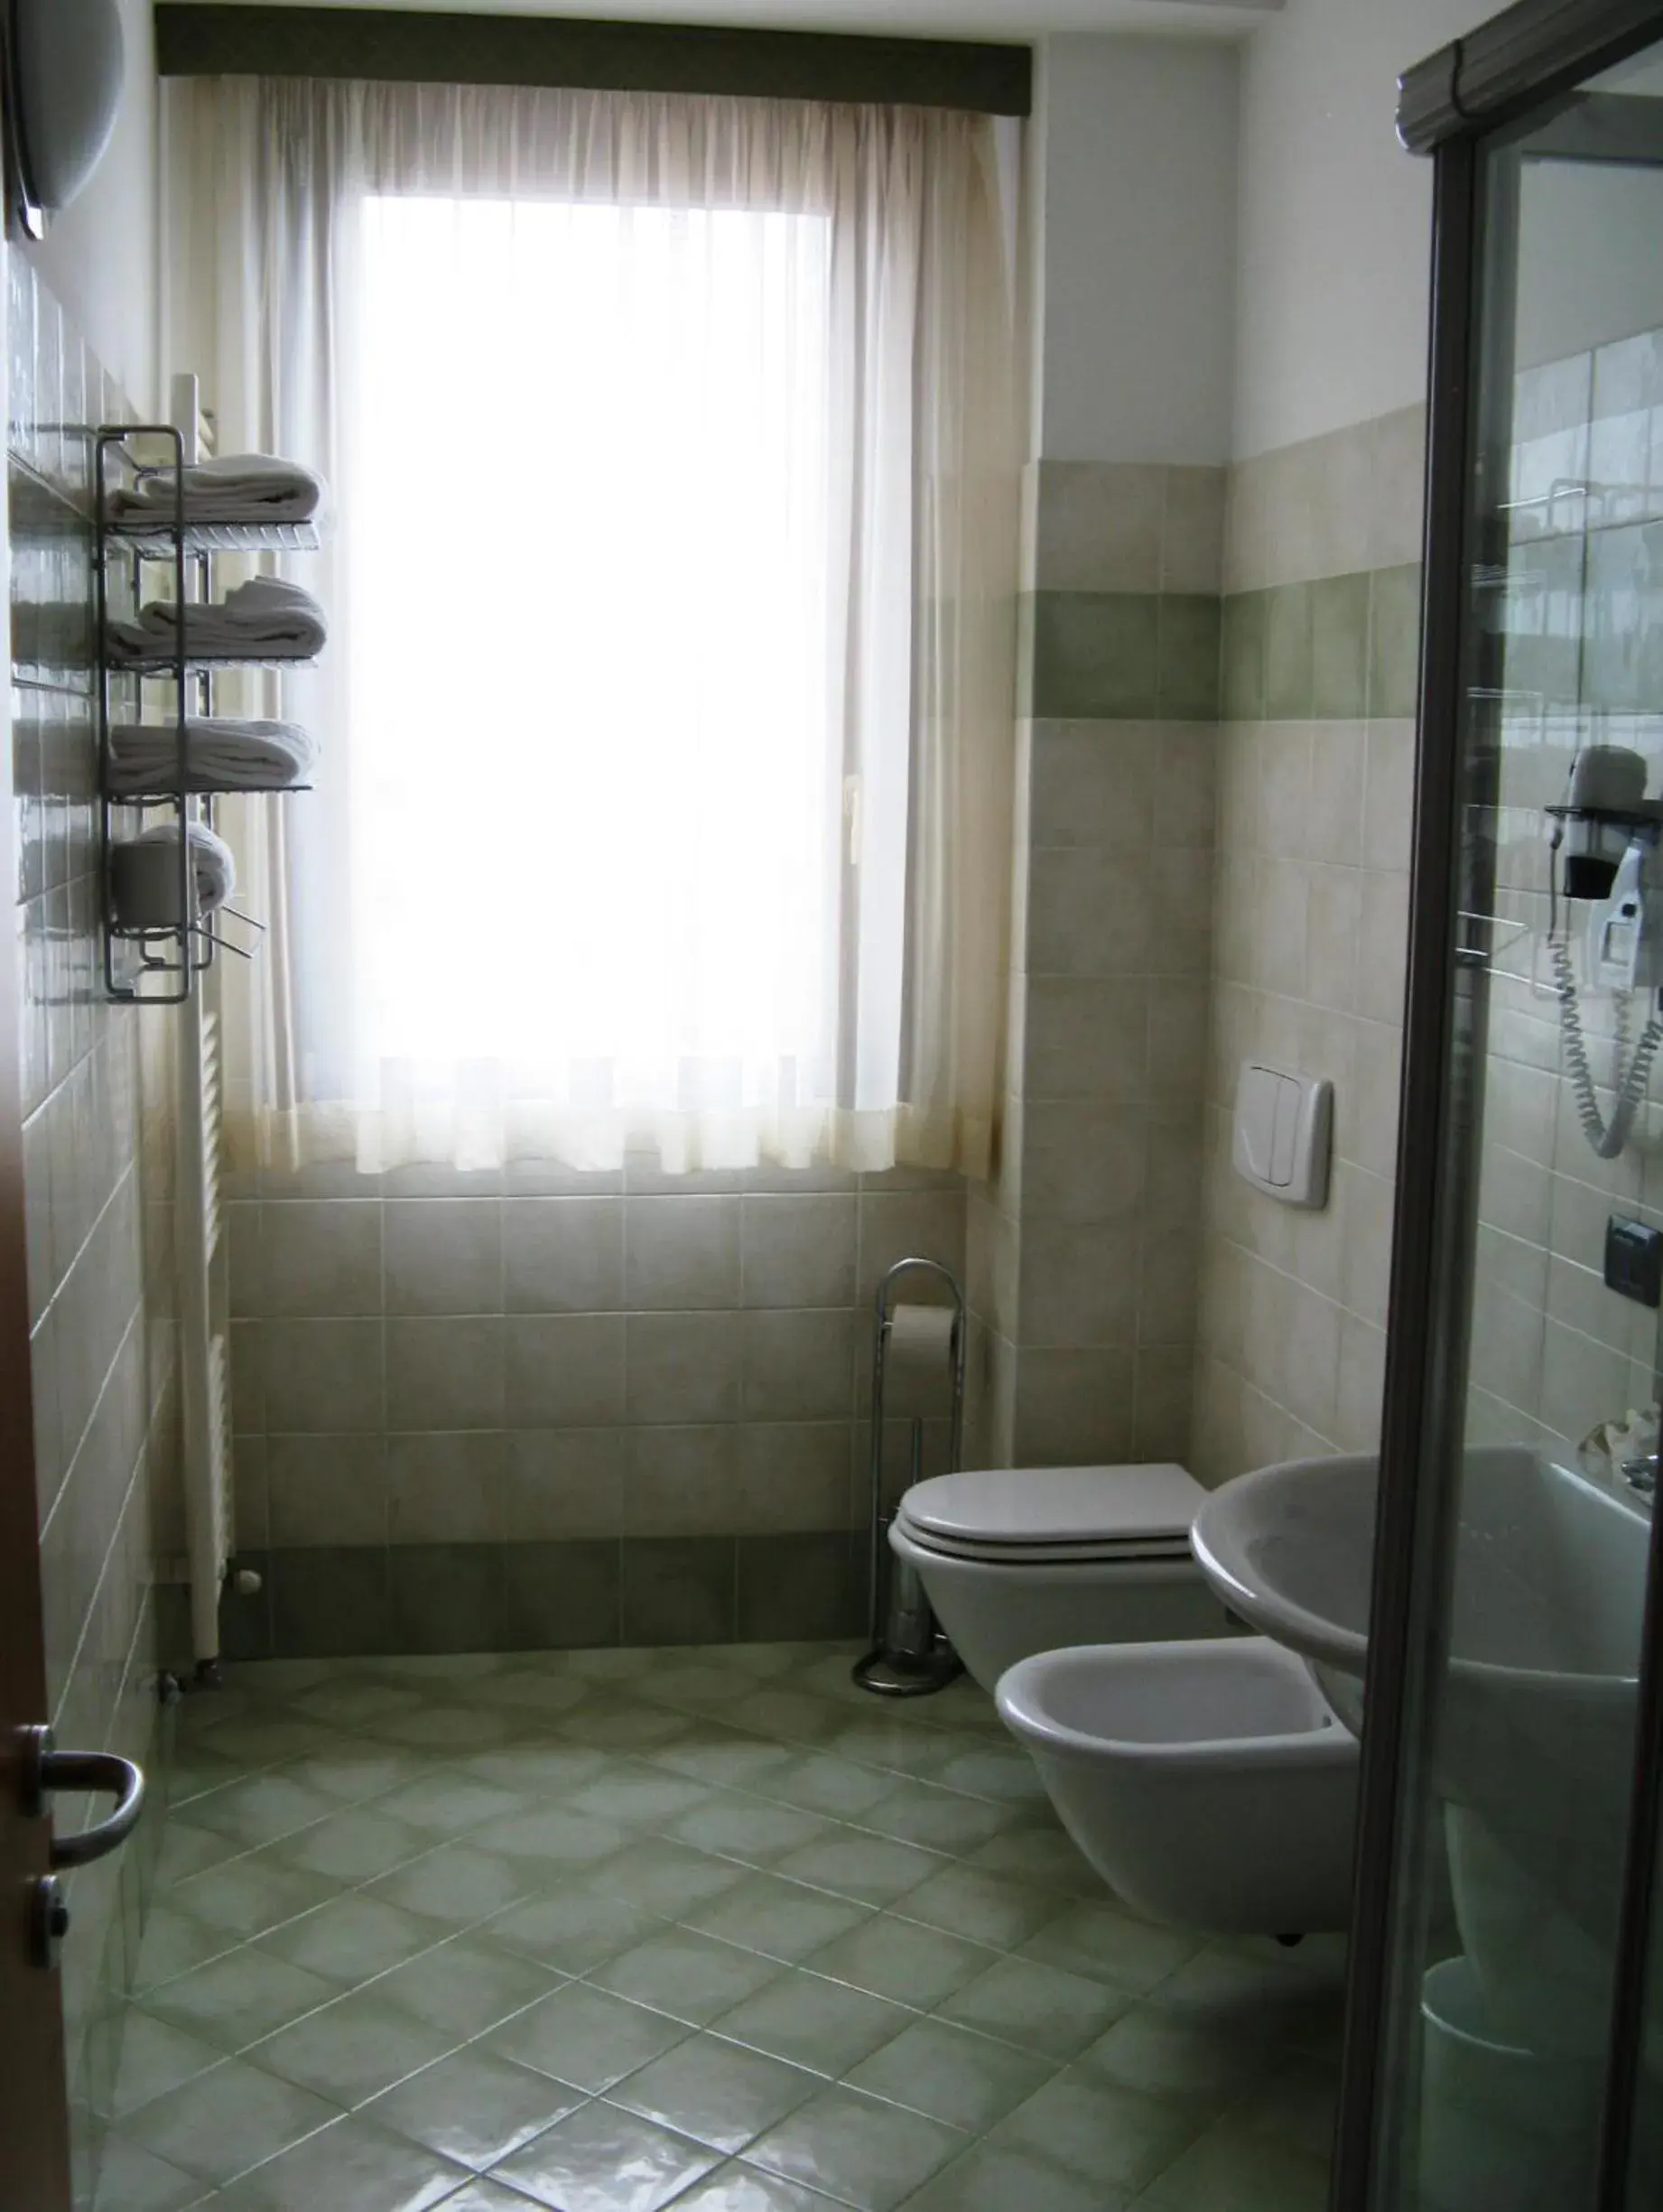 Bathroom in International Hotel